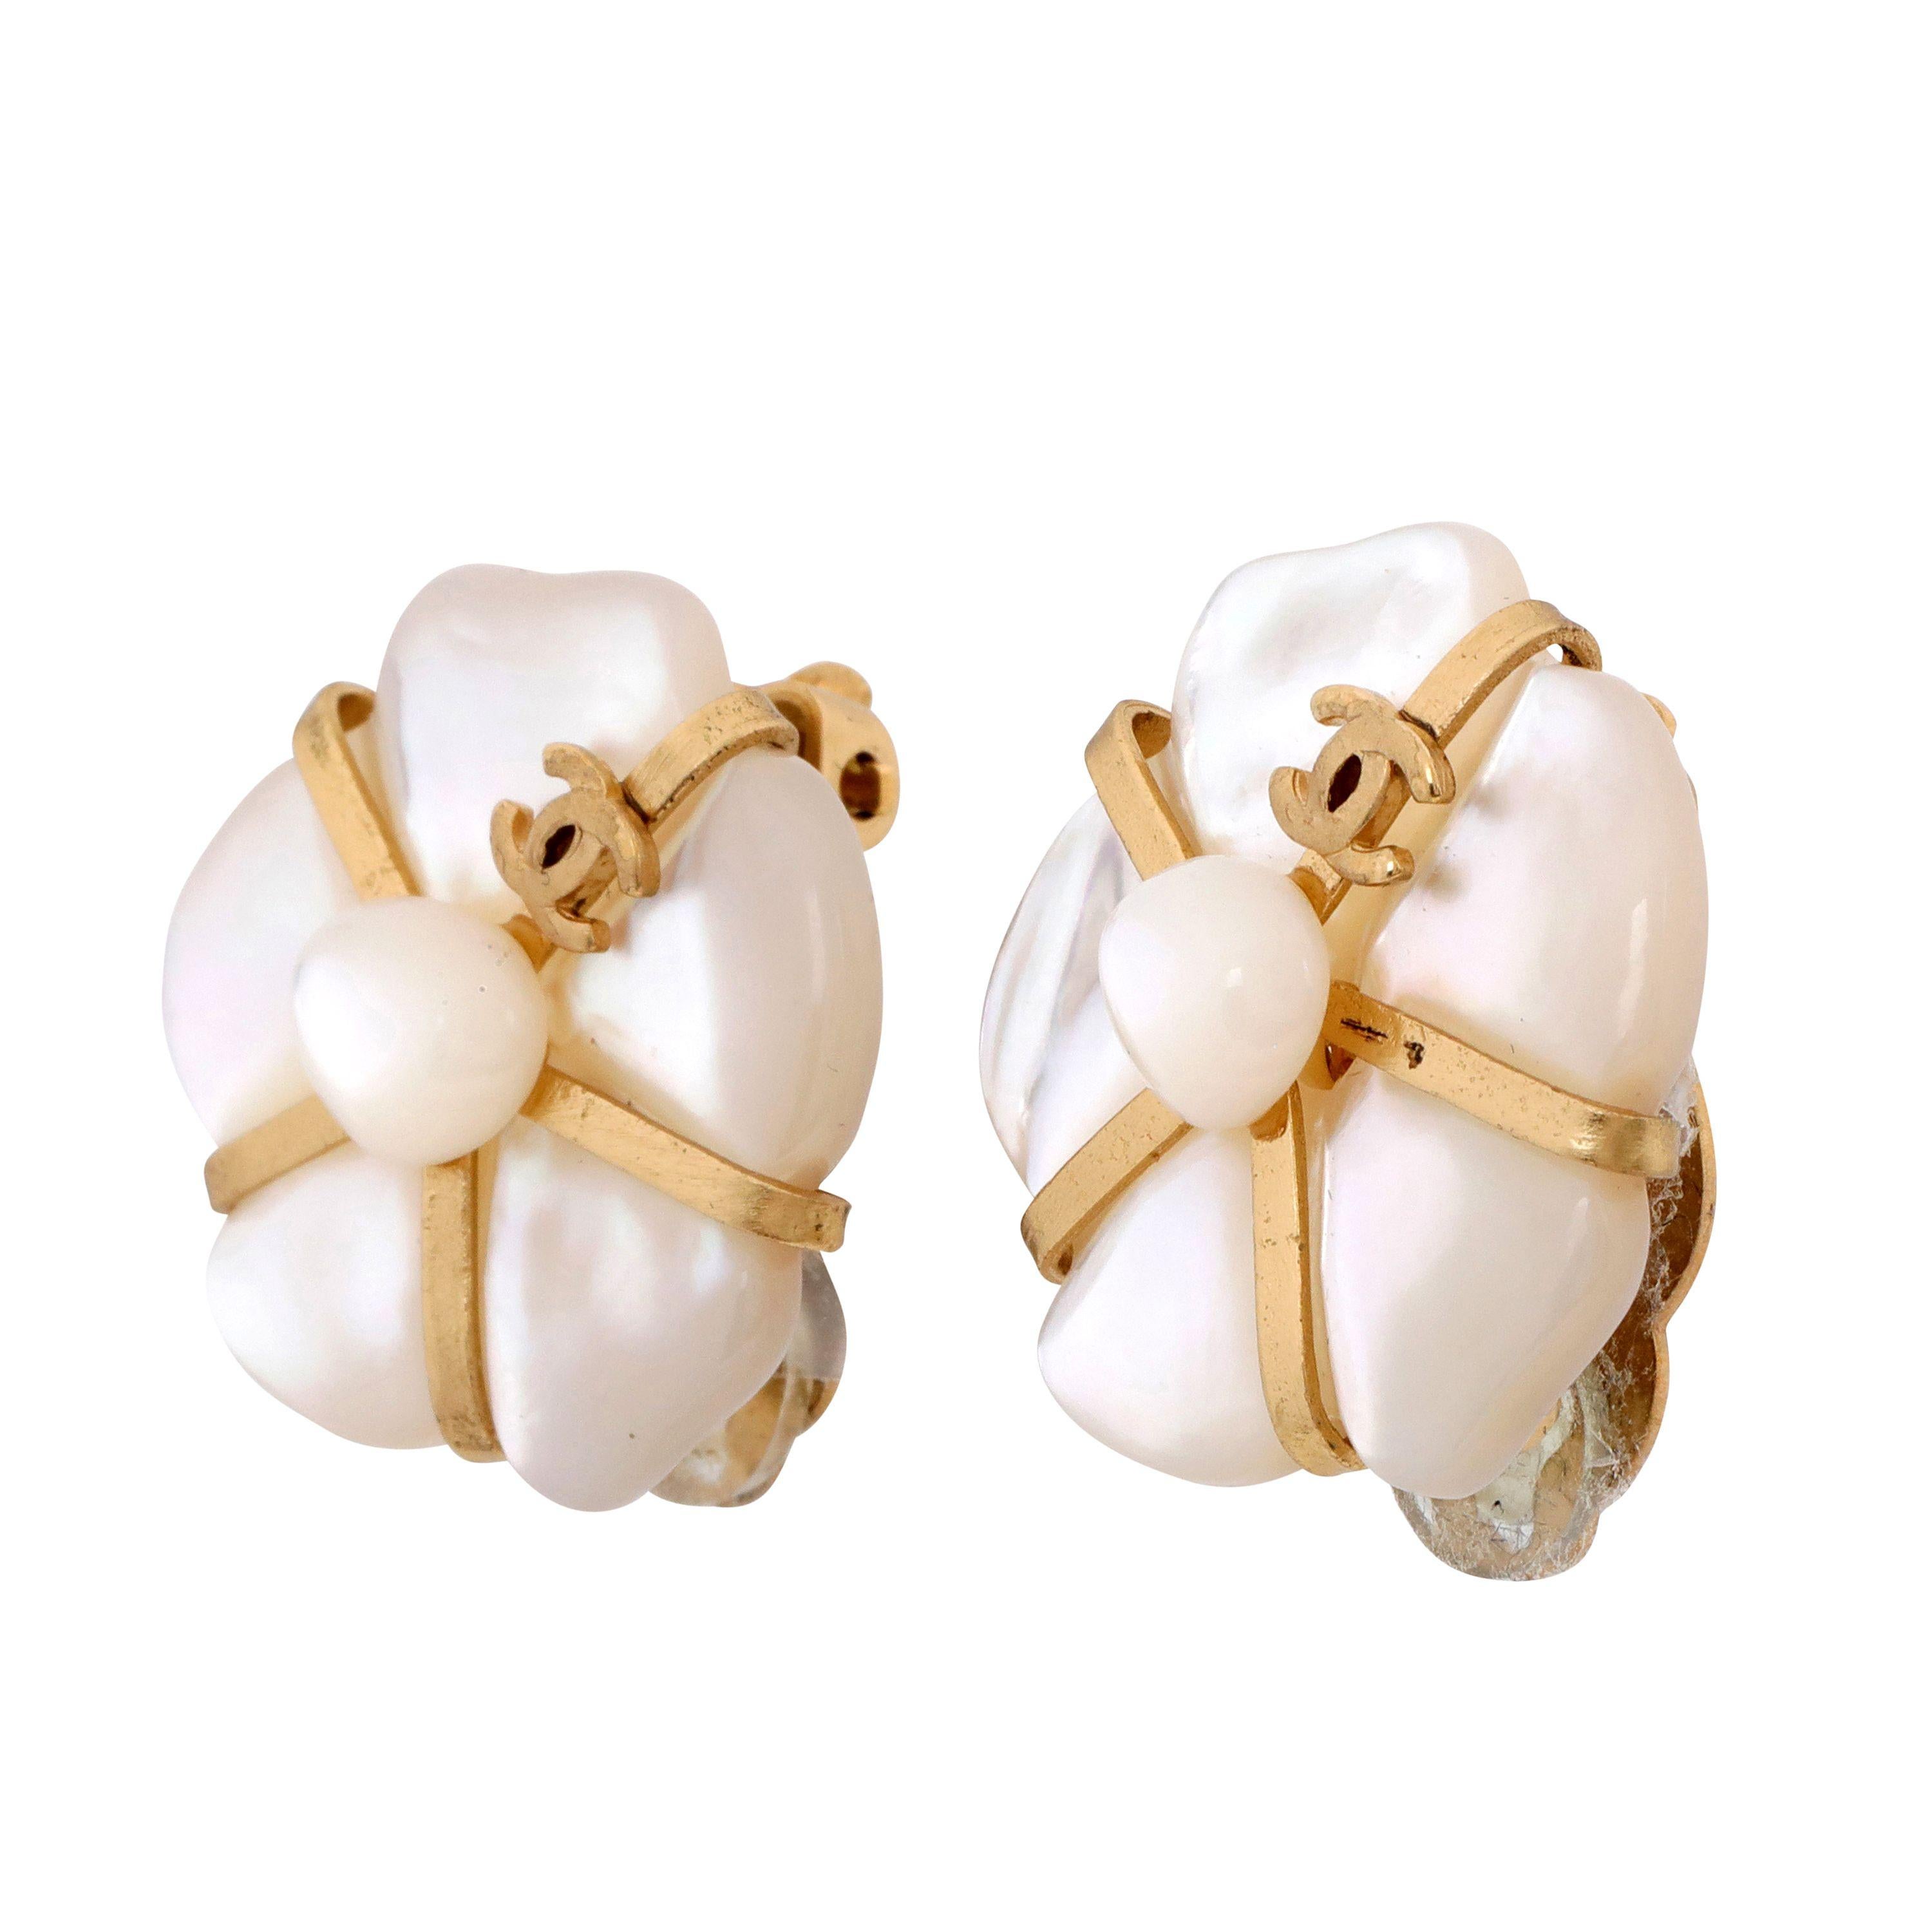 Ces authentiques boucles d'oreilles Camélia en nacre de Chanel sont intactes et proviennent de la collection 2001 Fine Jewelry.  Centre de la fleur de camélia en nacre abstraite avec or. Style à clip.     Pochette ou boîte incluse. 
PBF 13795
